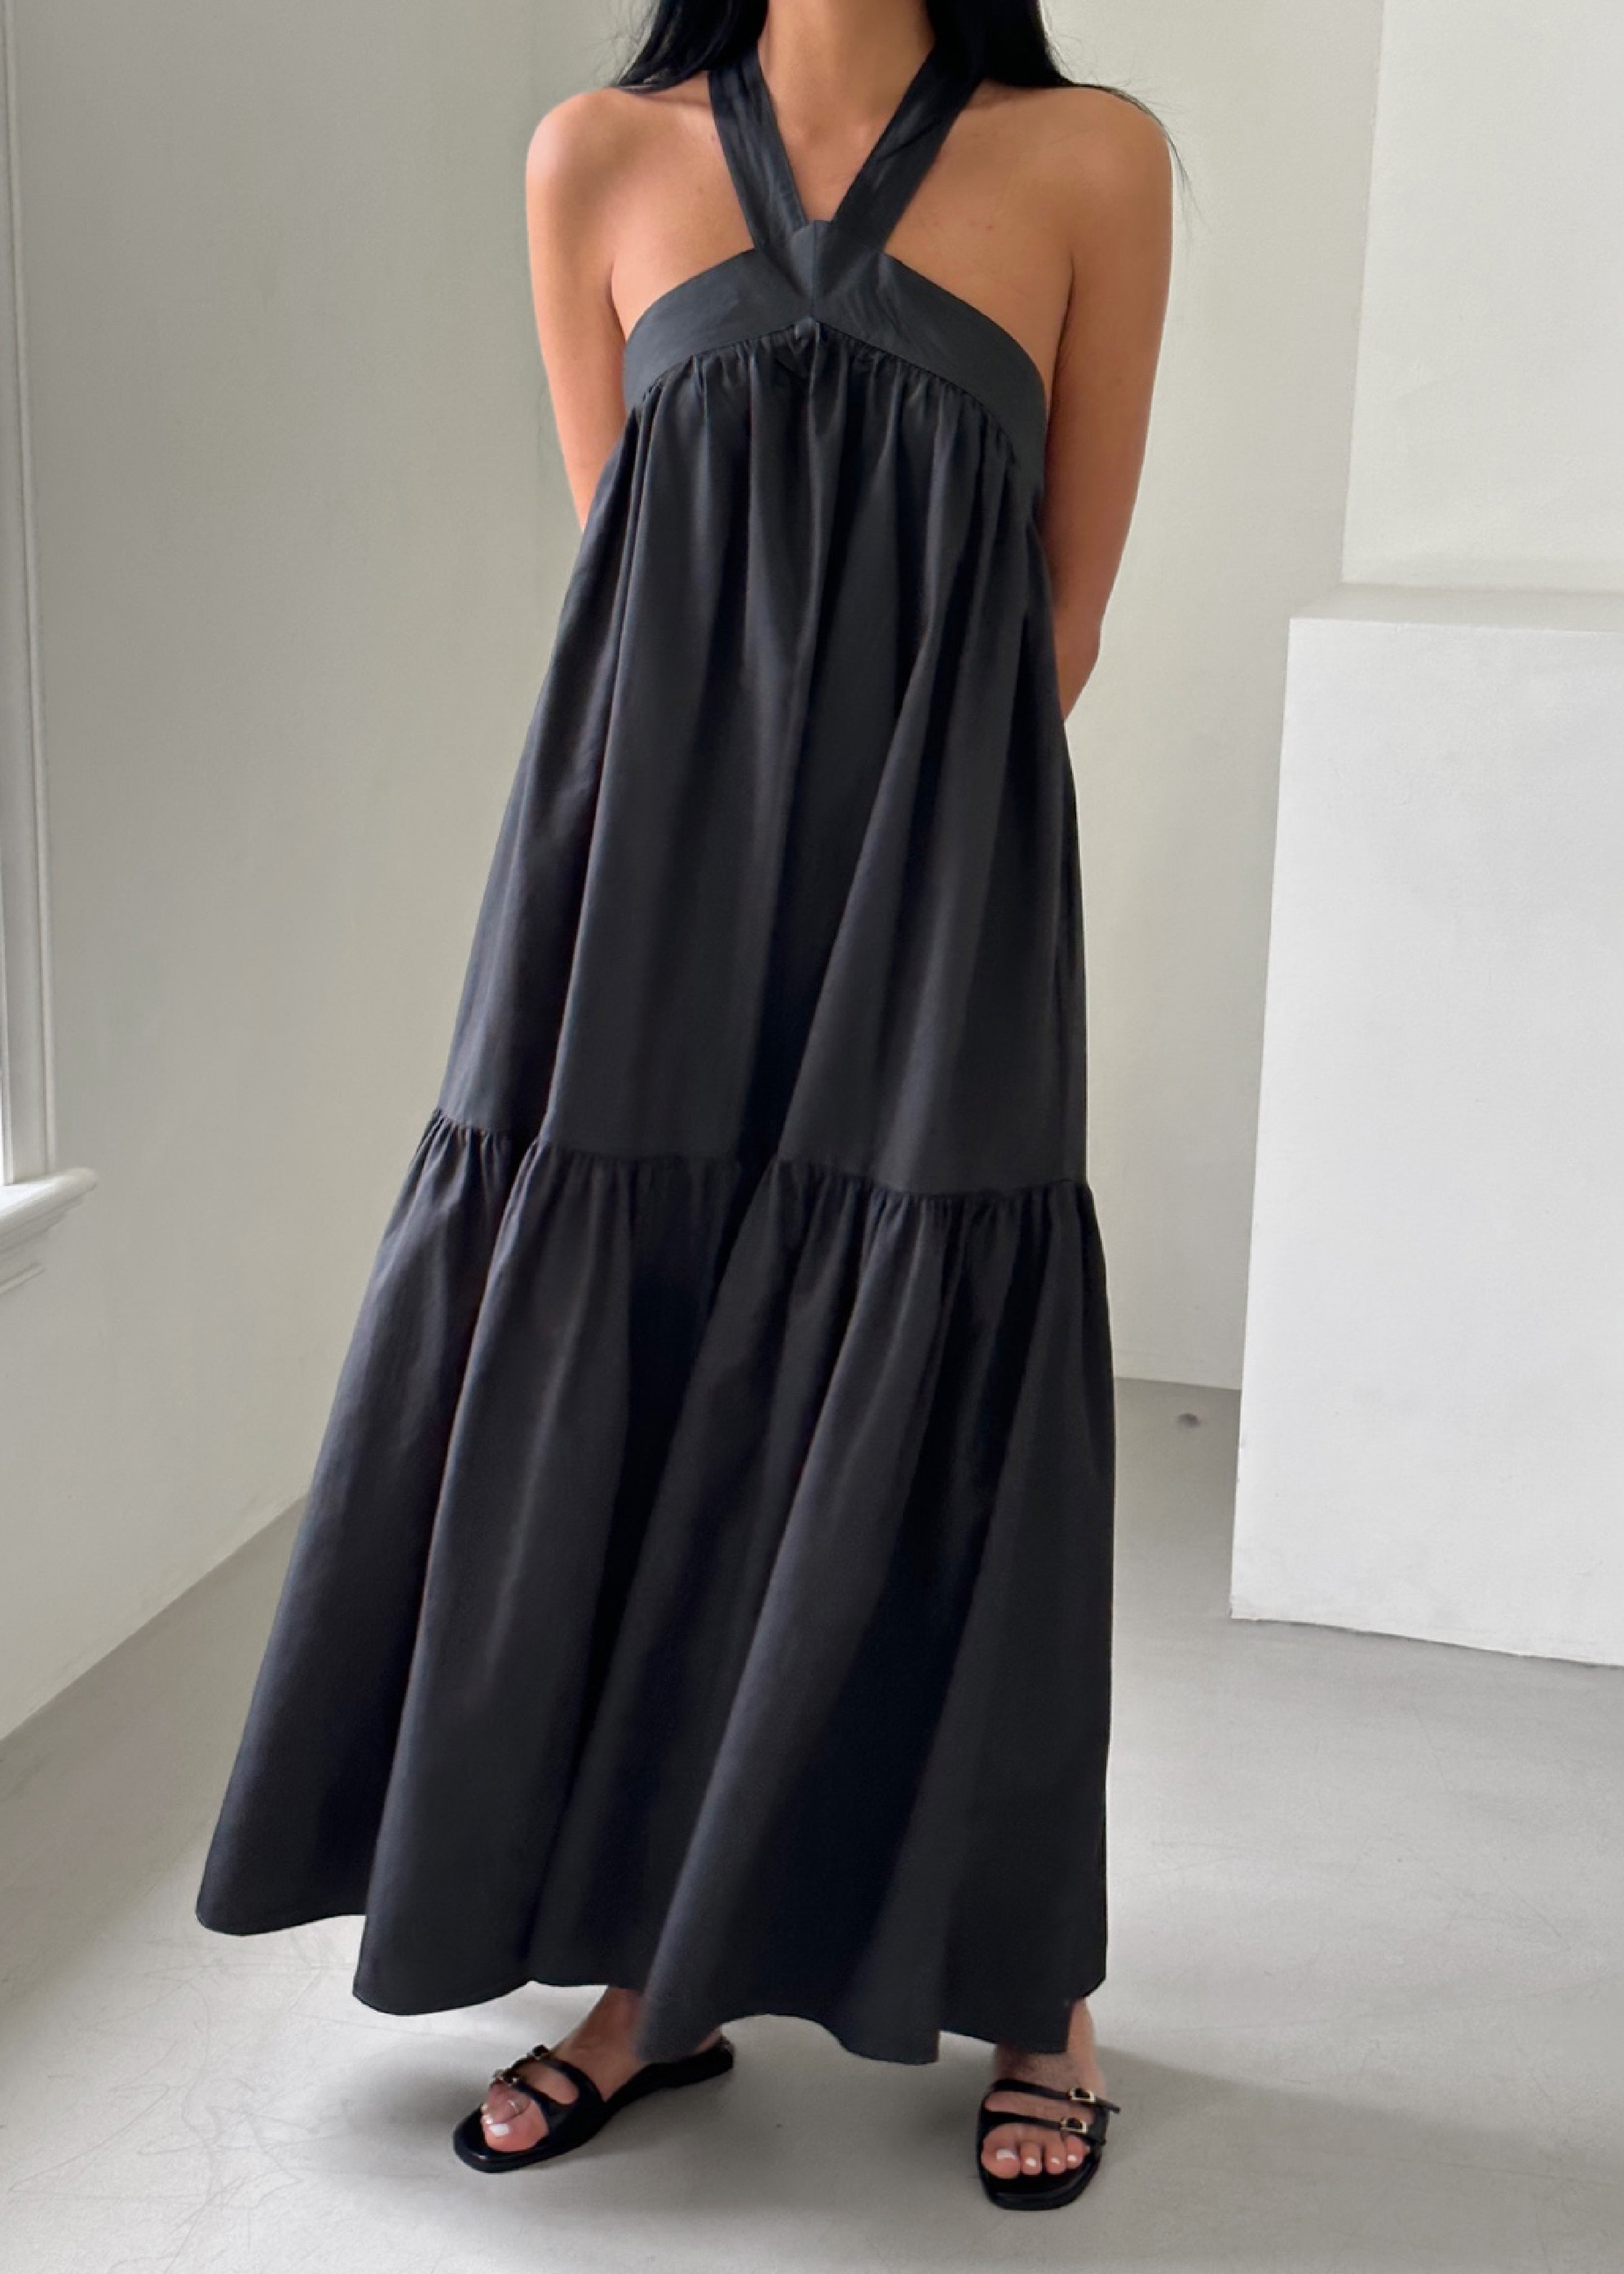 Gracie Halter Maxi Dress - Charcoal - 3